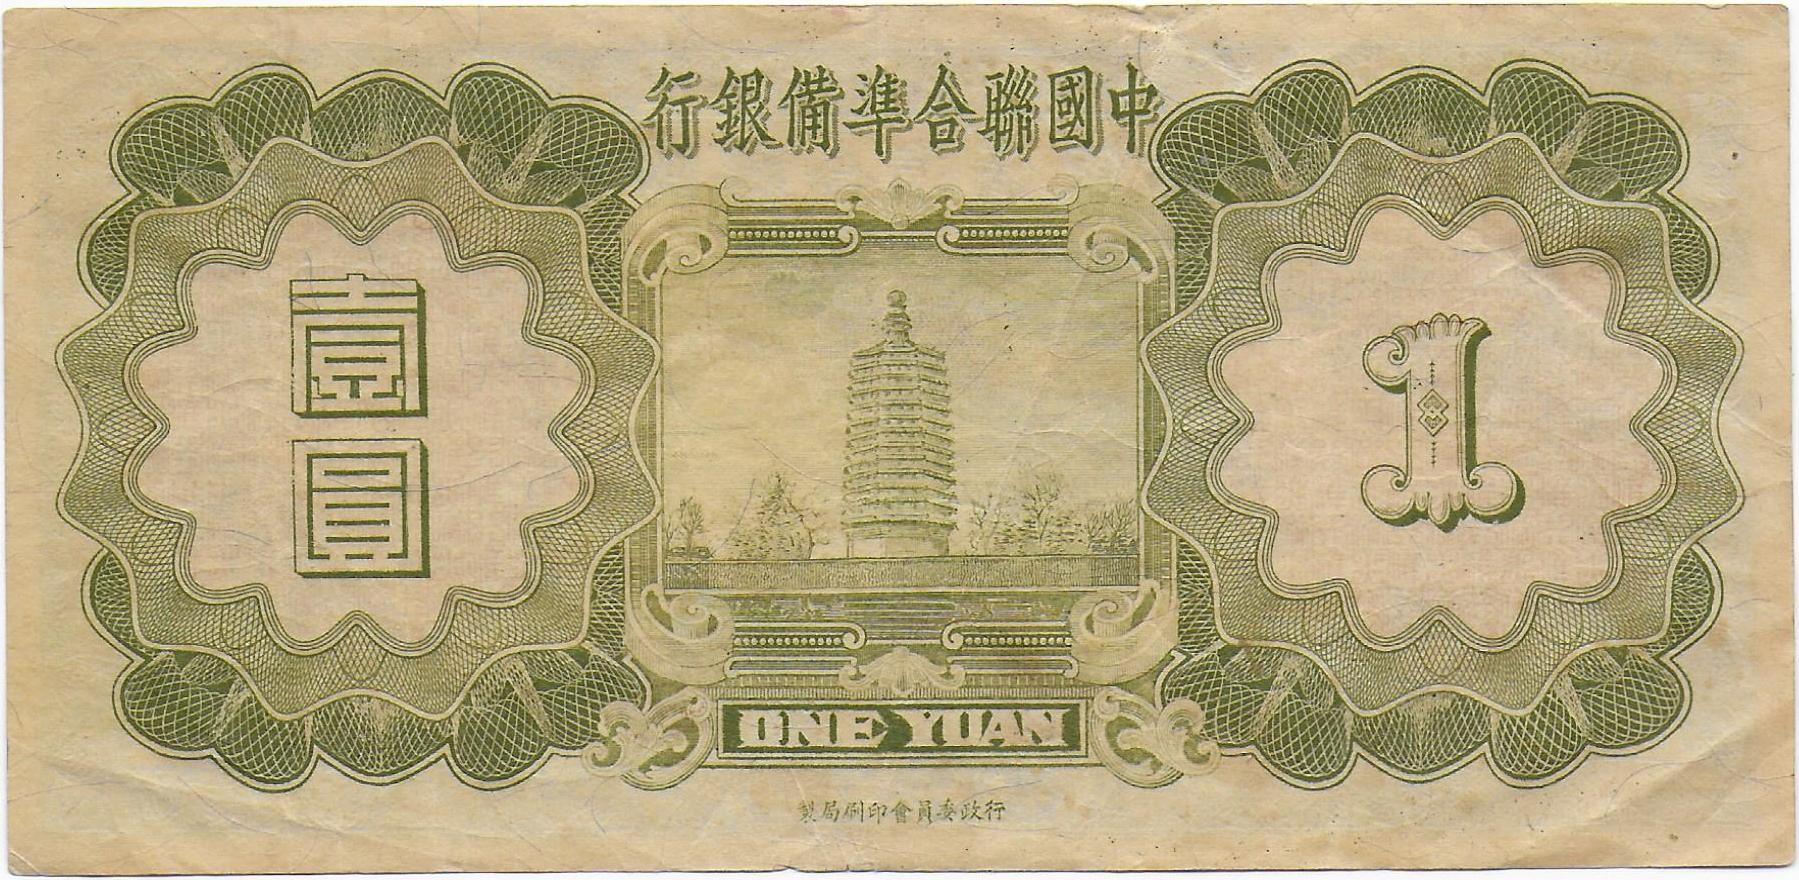 China Federal Reserve Bank of China 1 Yuan 1938 back.jpg